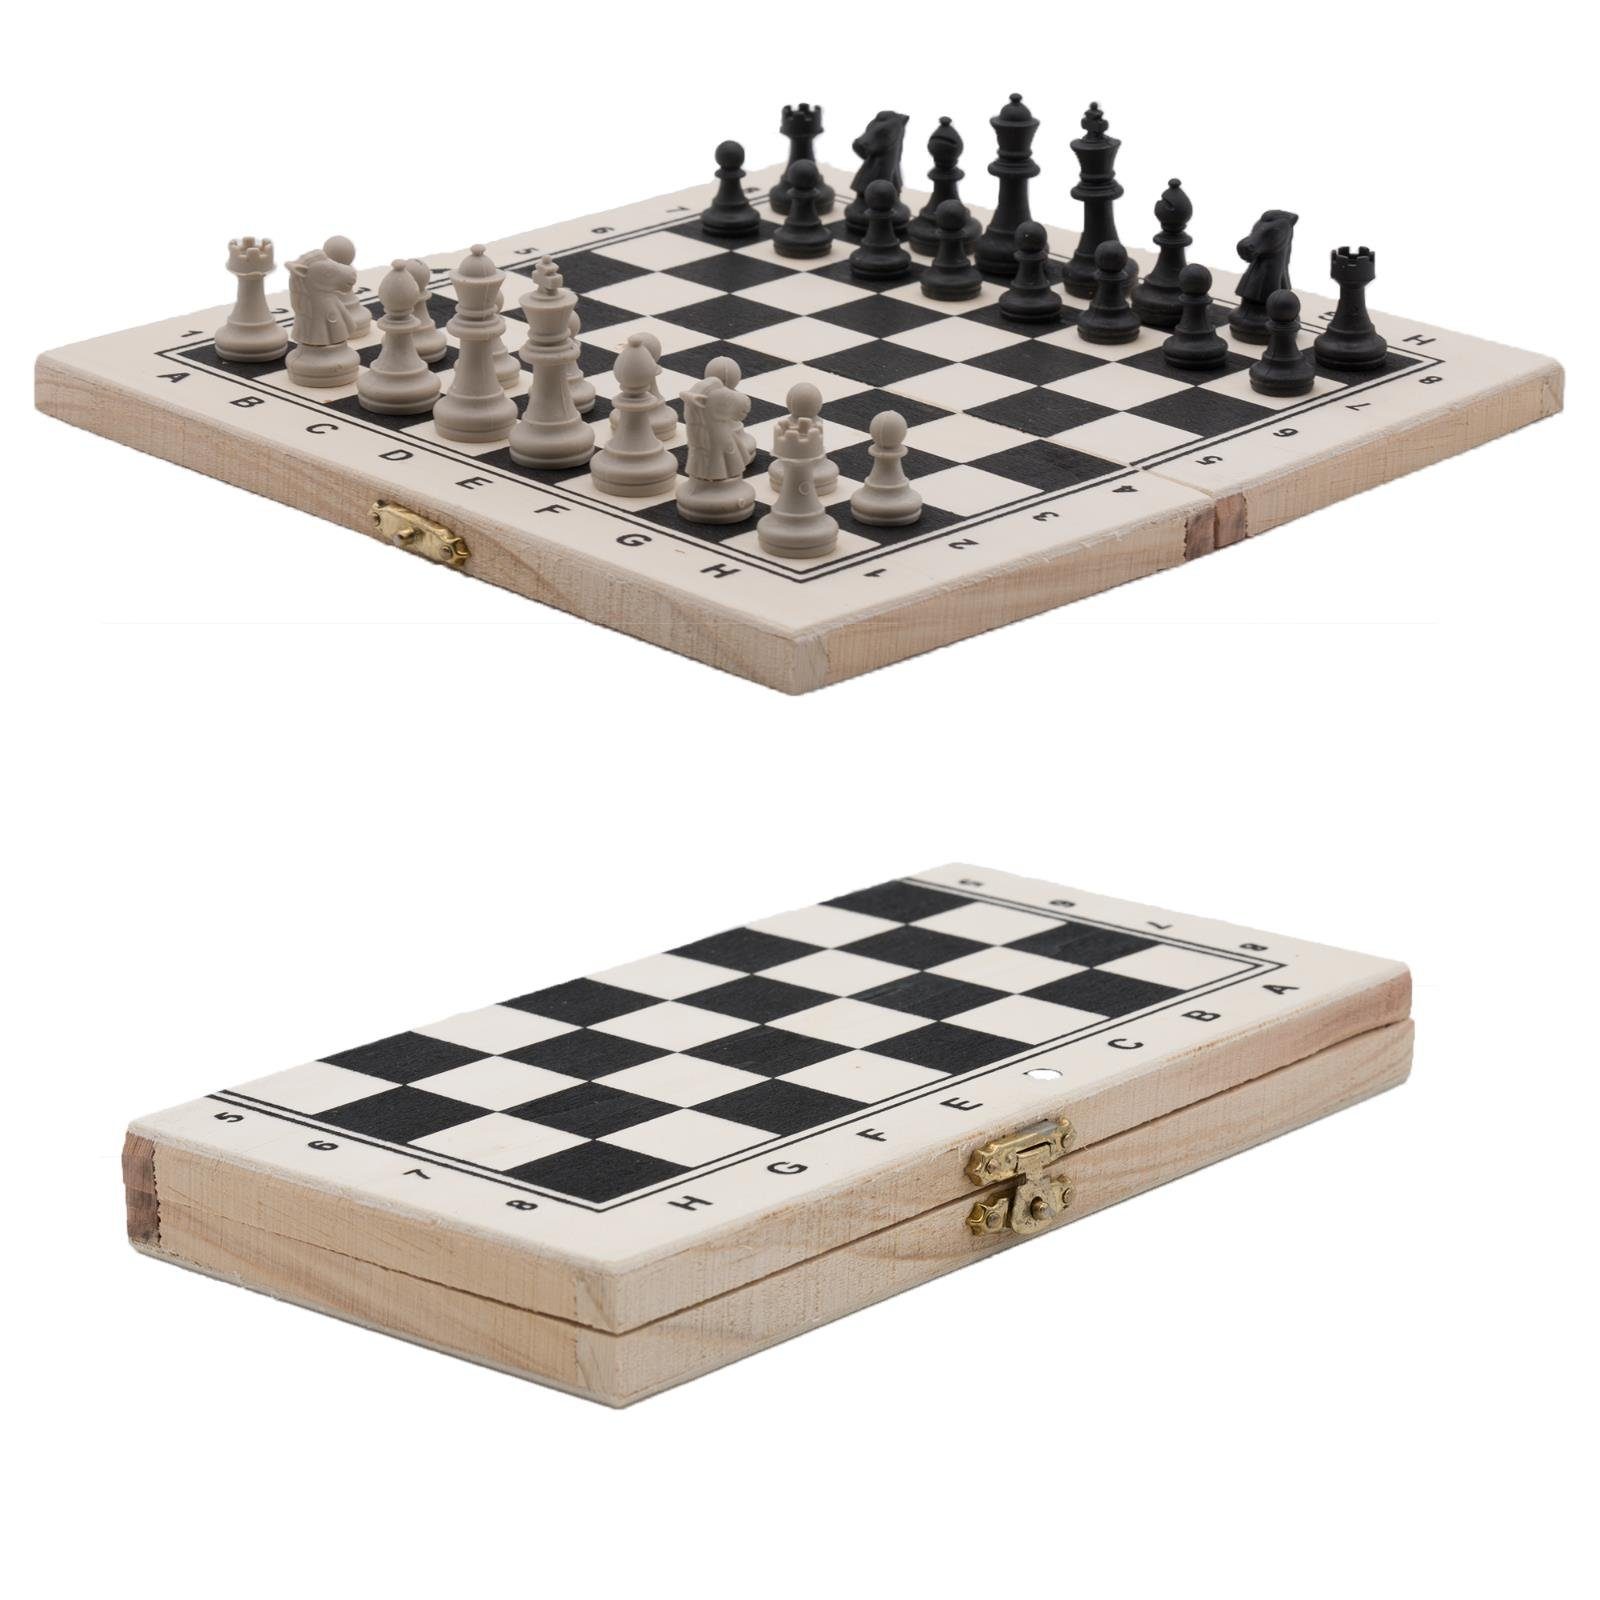 Schach Spiel Schachspiel Brettspiel Schachbrett Шахматы Chess 40 x 40 x 3 cm 